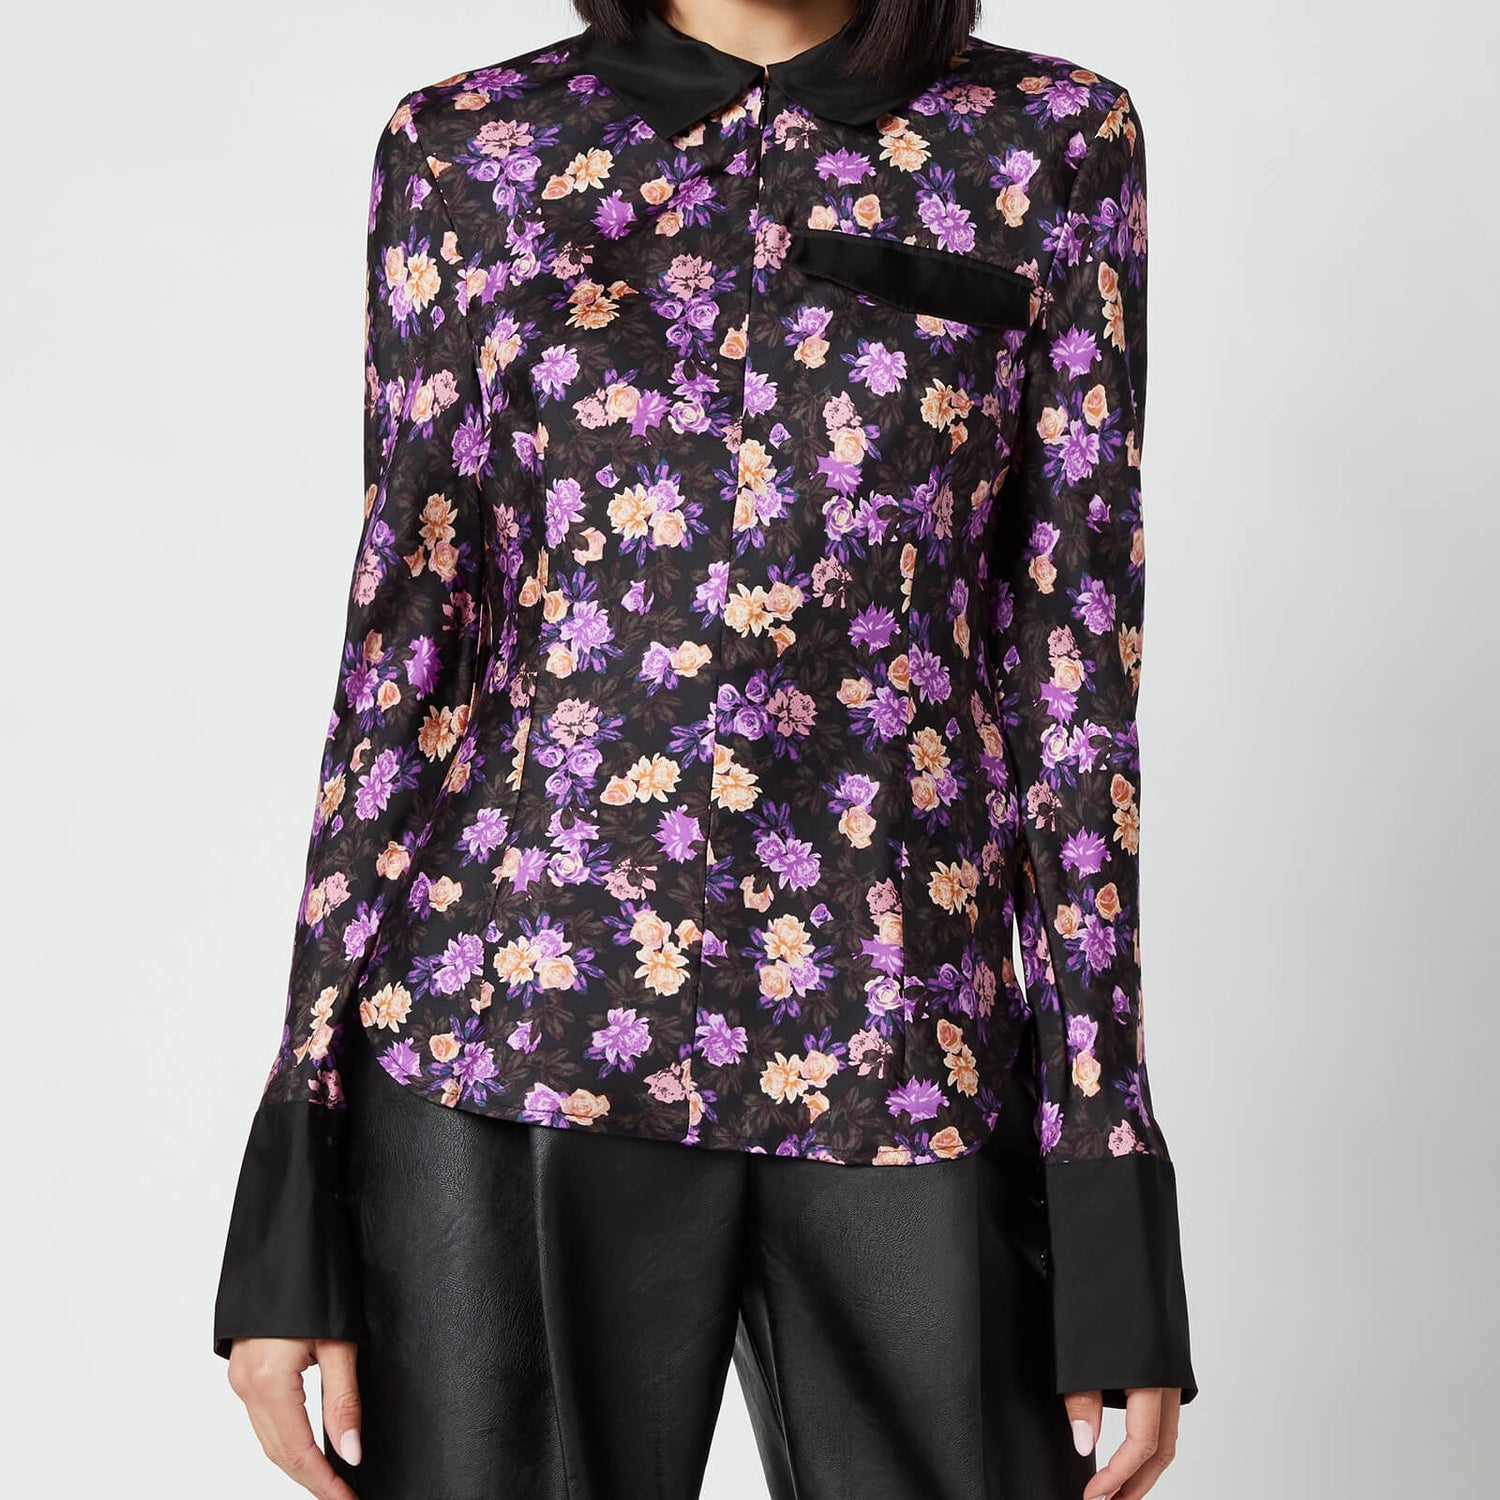 Baum Und Pferdgarten Women's Mirinda Shirt - Paris Flower Purple - EU 34/UK 6